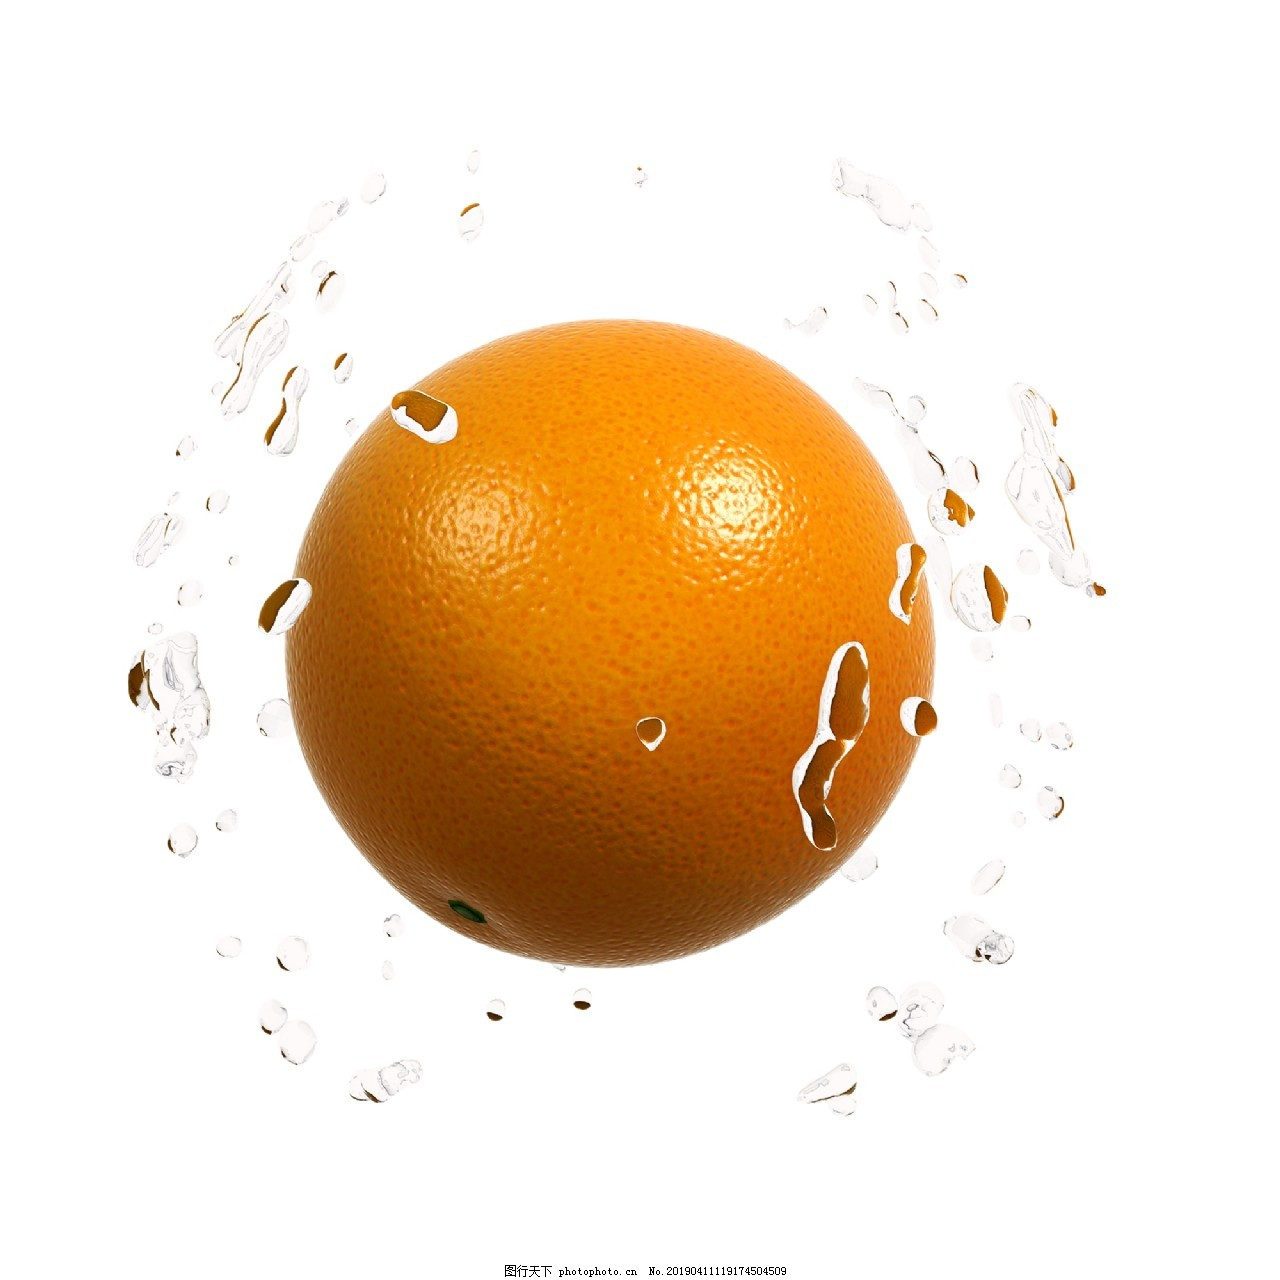 ‘~质感橙子png图图片_生物静物_平面创作元素-  ~’ 的图片